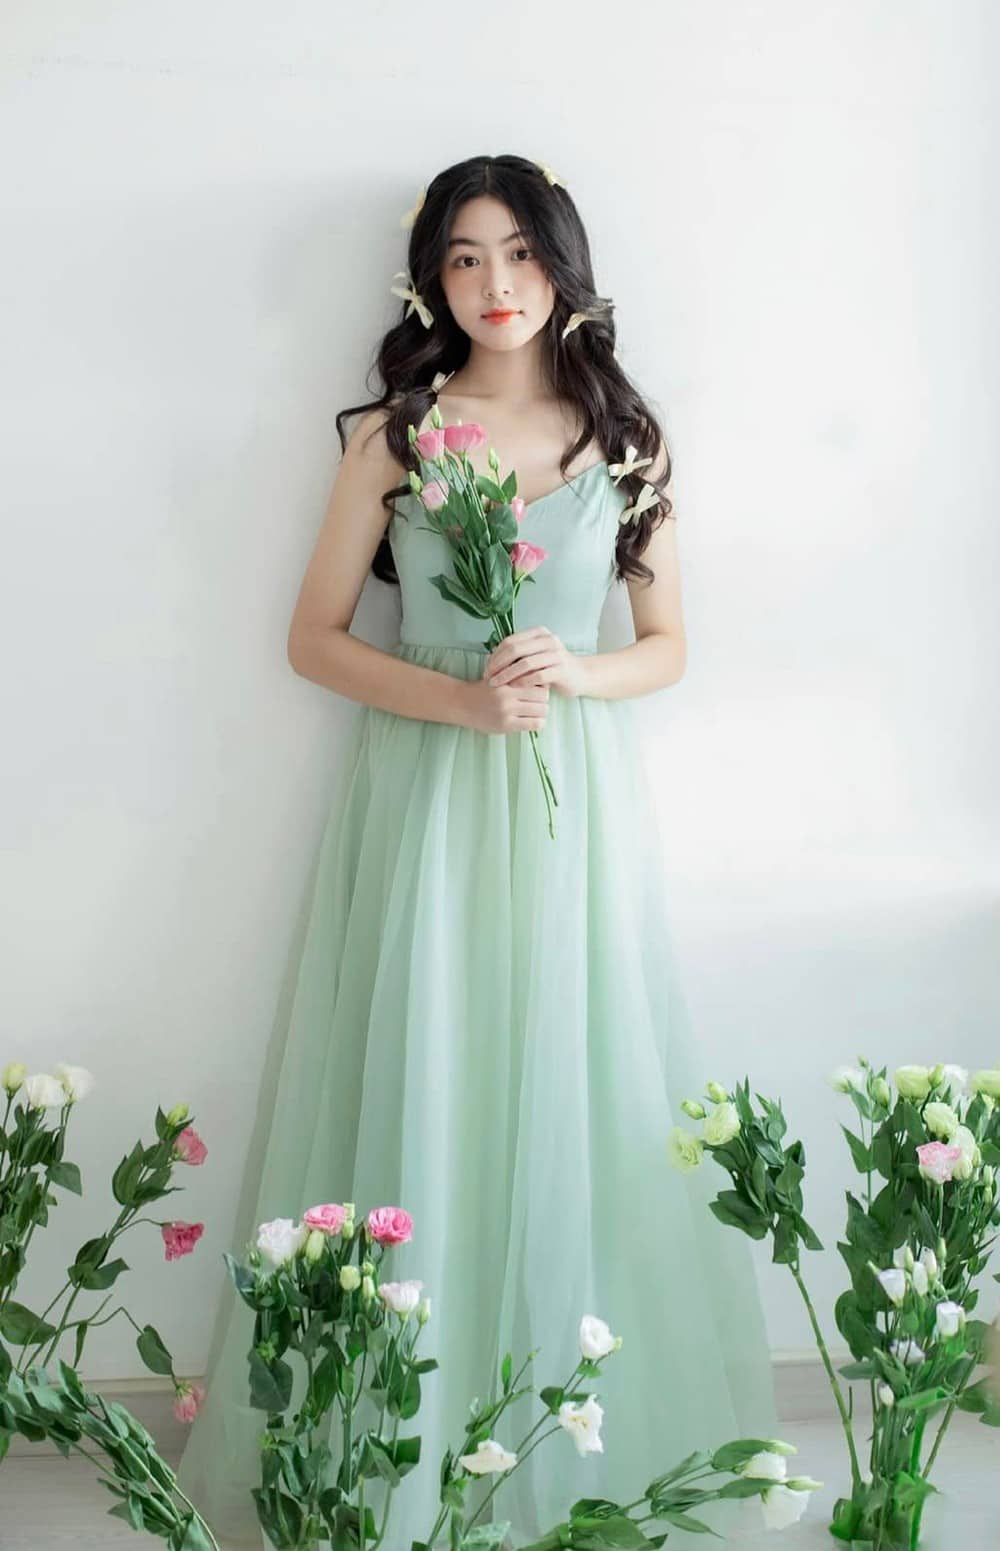 Con gái Quyền Linh lại gây sốt MXH với bộ ảnh ngọt ngào, kỷ niệm lần đầu chụp quảng cáo chuyên nghiệp - Ảnh 10